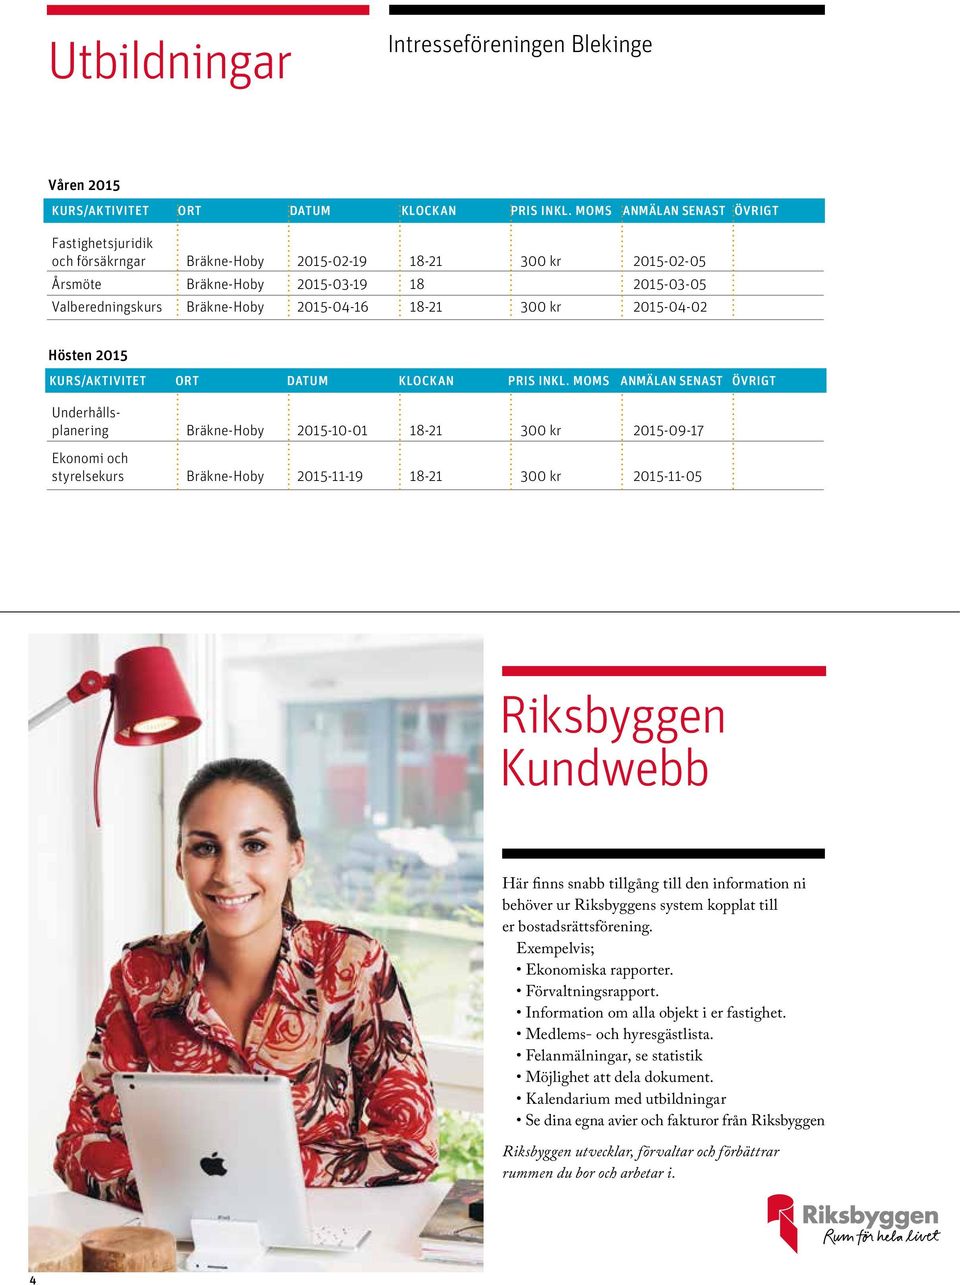 Riksbyggen Kundwebb Här finns snabb tillgång till den information ni behöver ur Riksbyggens system kopplat till er bostadsrättsförening. Exempelvis; Ekonomiska rapporter. Förvaltningsrapport.